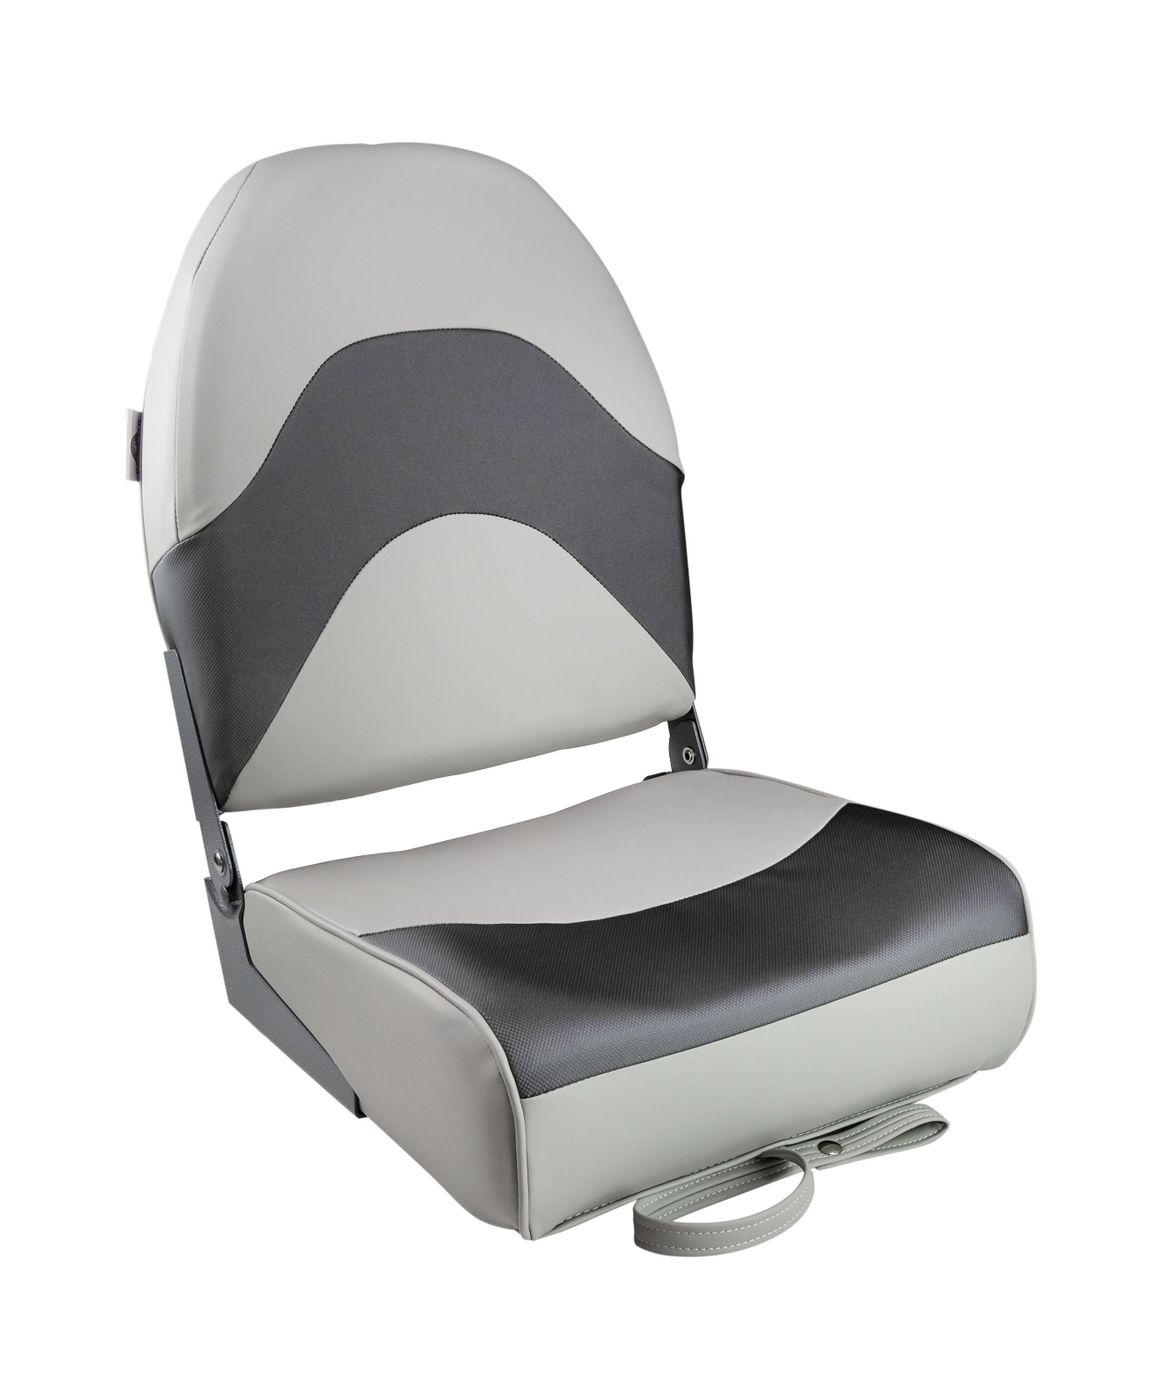 Кресло складное мягкое PREMIUM WAVE, цвет серый/черный 1062034 сиденье мягкое bass boat seat серый черный 75132gcc